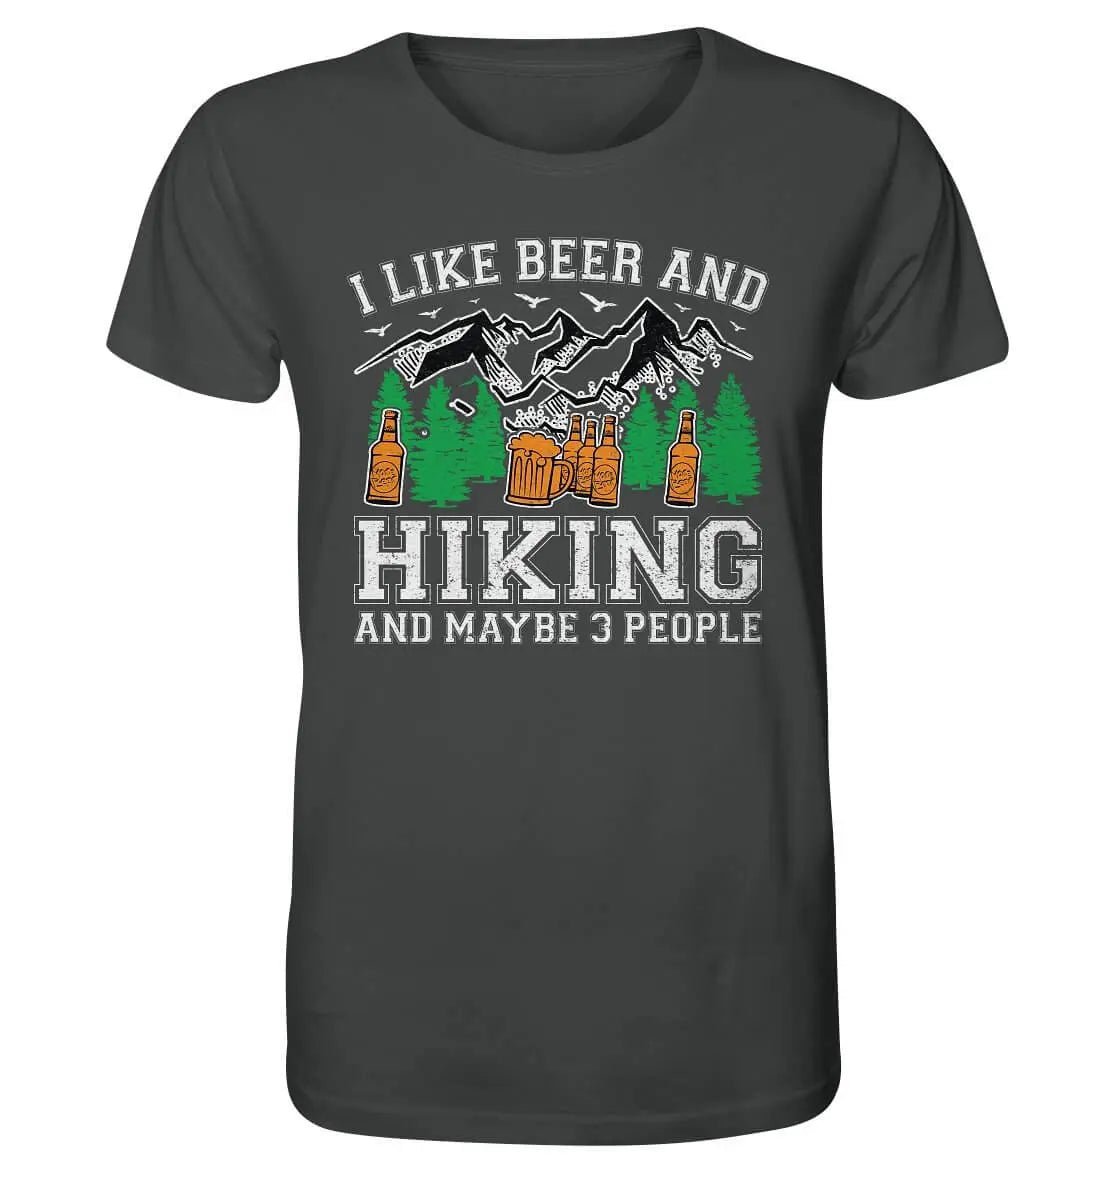 Ein Hoppymerch Bier T-Shirt für Männer mit der Aufschrift „Ich mag Bier, Wandern und vielleicht 3 Leute“.